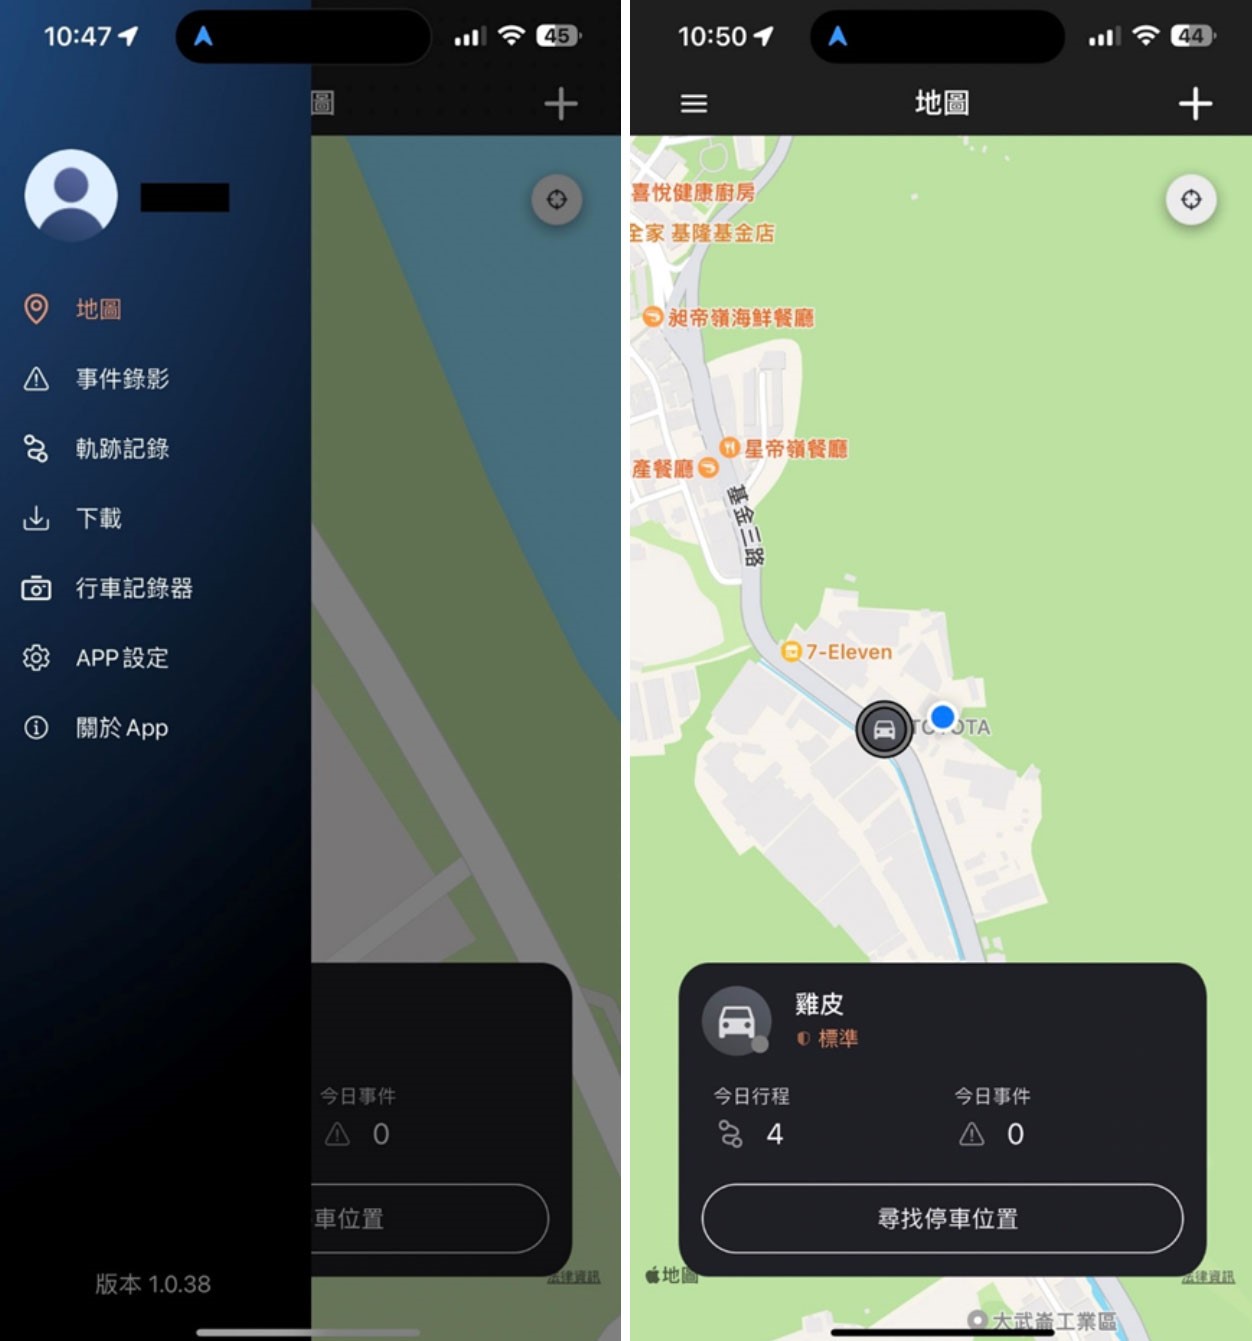 MioNext App 安裝定完成後打開左上選單後就可以看到地圖、事件錄影、軌跡記錄、行車記錄器定選項，像在地圖模式停車熄火之後就會顯示尋找停車位置，對於會忘記自己停車位置的人來說，這個功能可以更輕鬆方便的找到停車位置（圖片來源：網友姜浩）